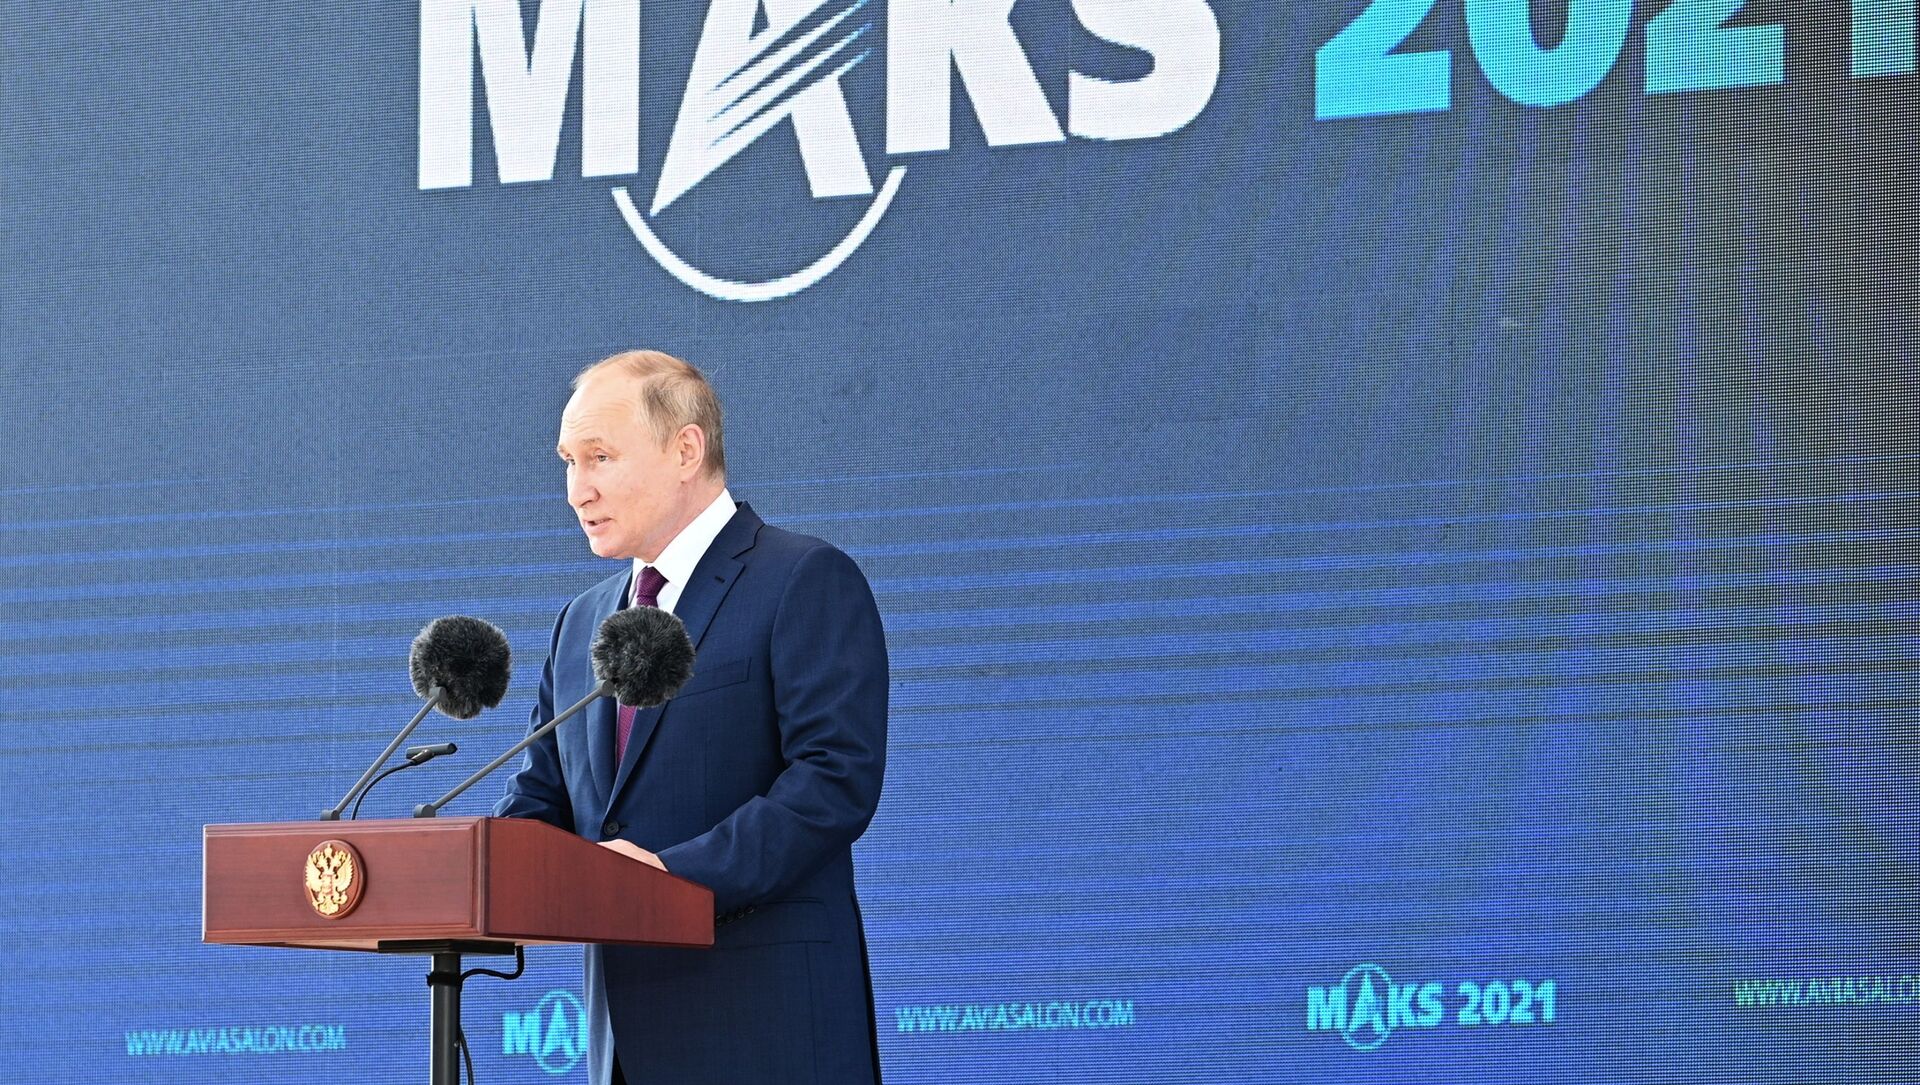 Rusiya prezidenti Vladimir Putin MAKS-2021 aviasalounun açlışında, 20 iyul 2021-ci il - Sputnik Азербайджан, 1920, 20.07.2021